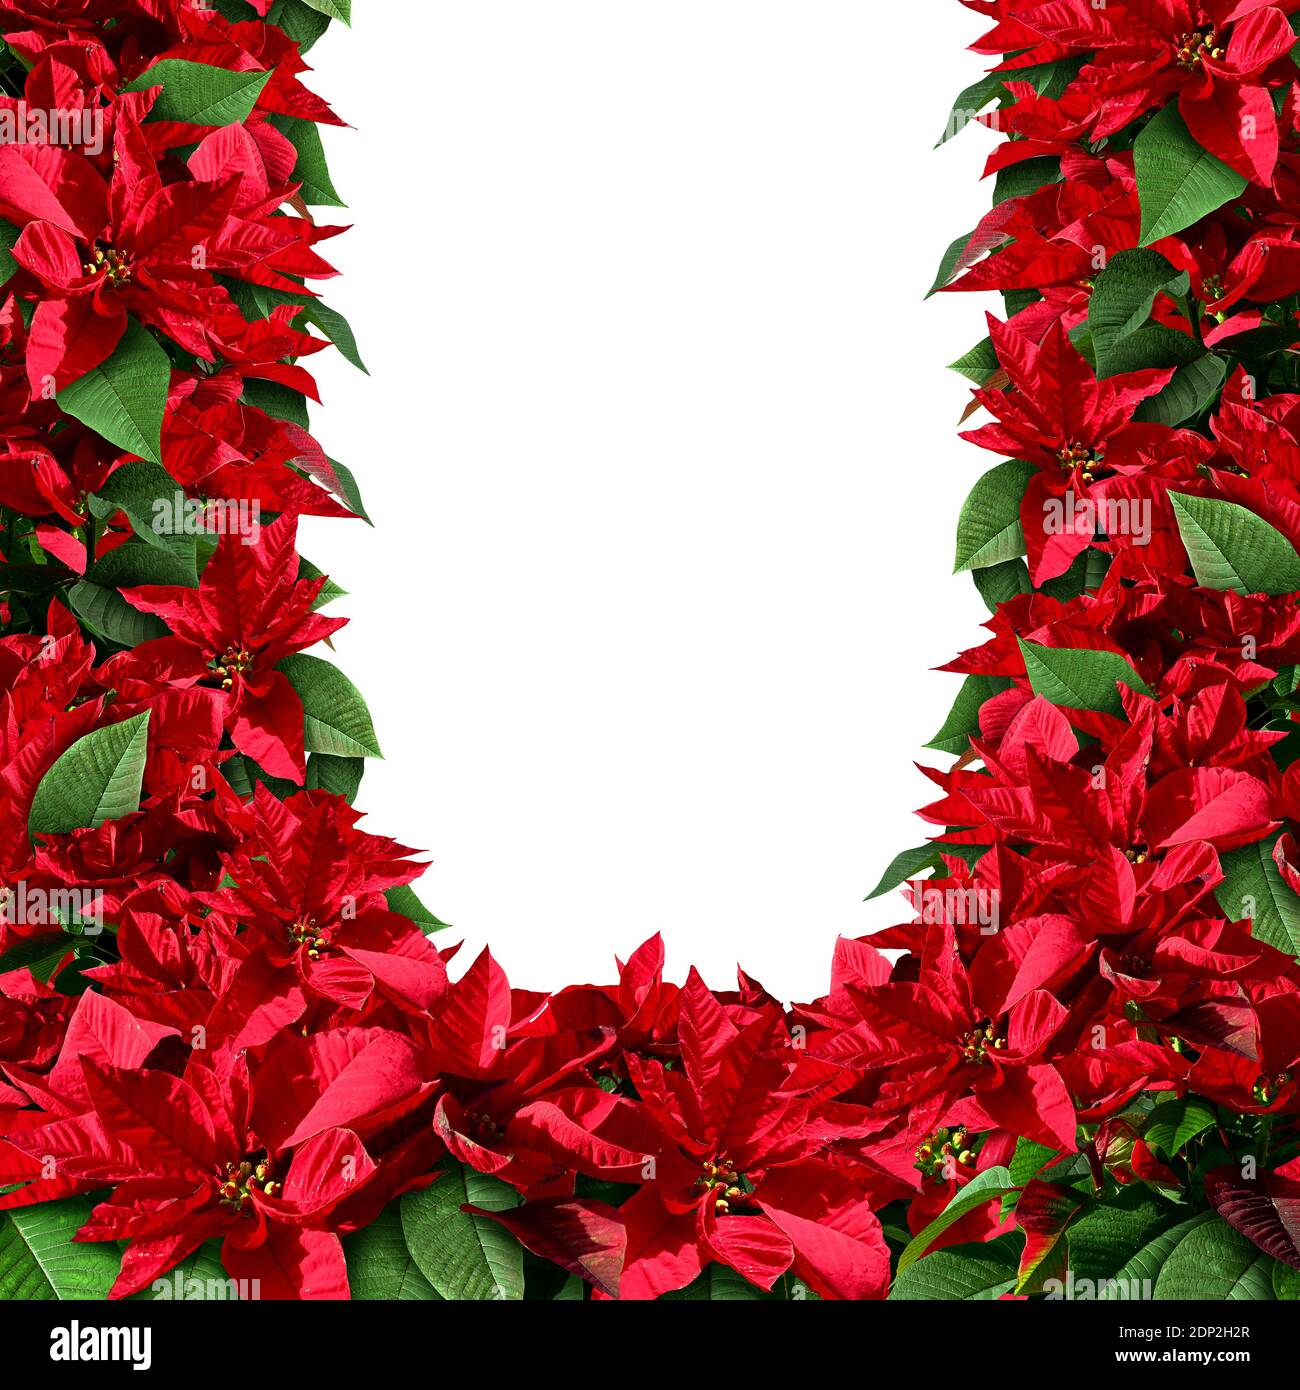 Poinsetta comme un cadre et un décor de bordure vierges comme élément de feuillage de Noël avec des plantes florales de l'amérique centrale et du Mexique représentant. Banque D'Images